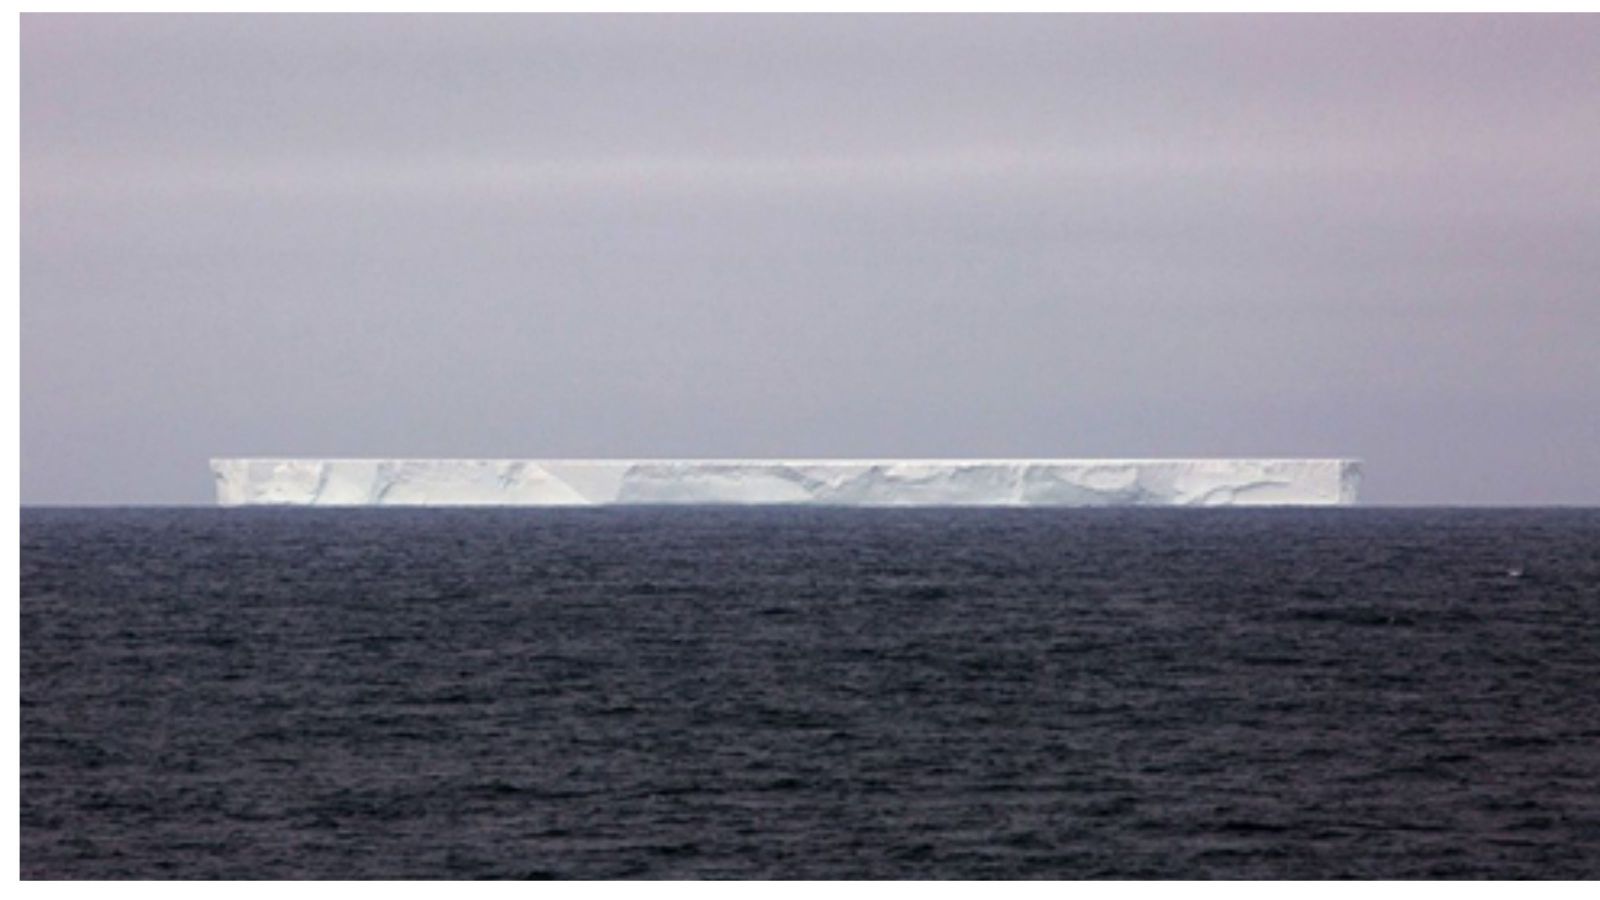 Image of iceberg in ocean 